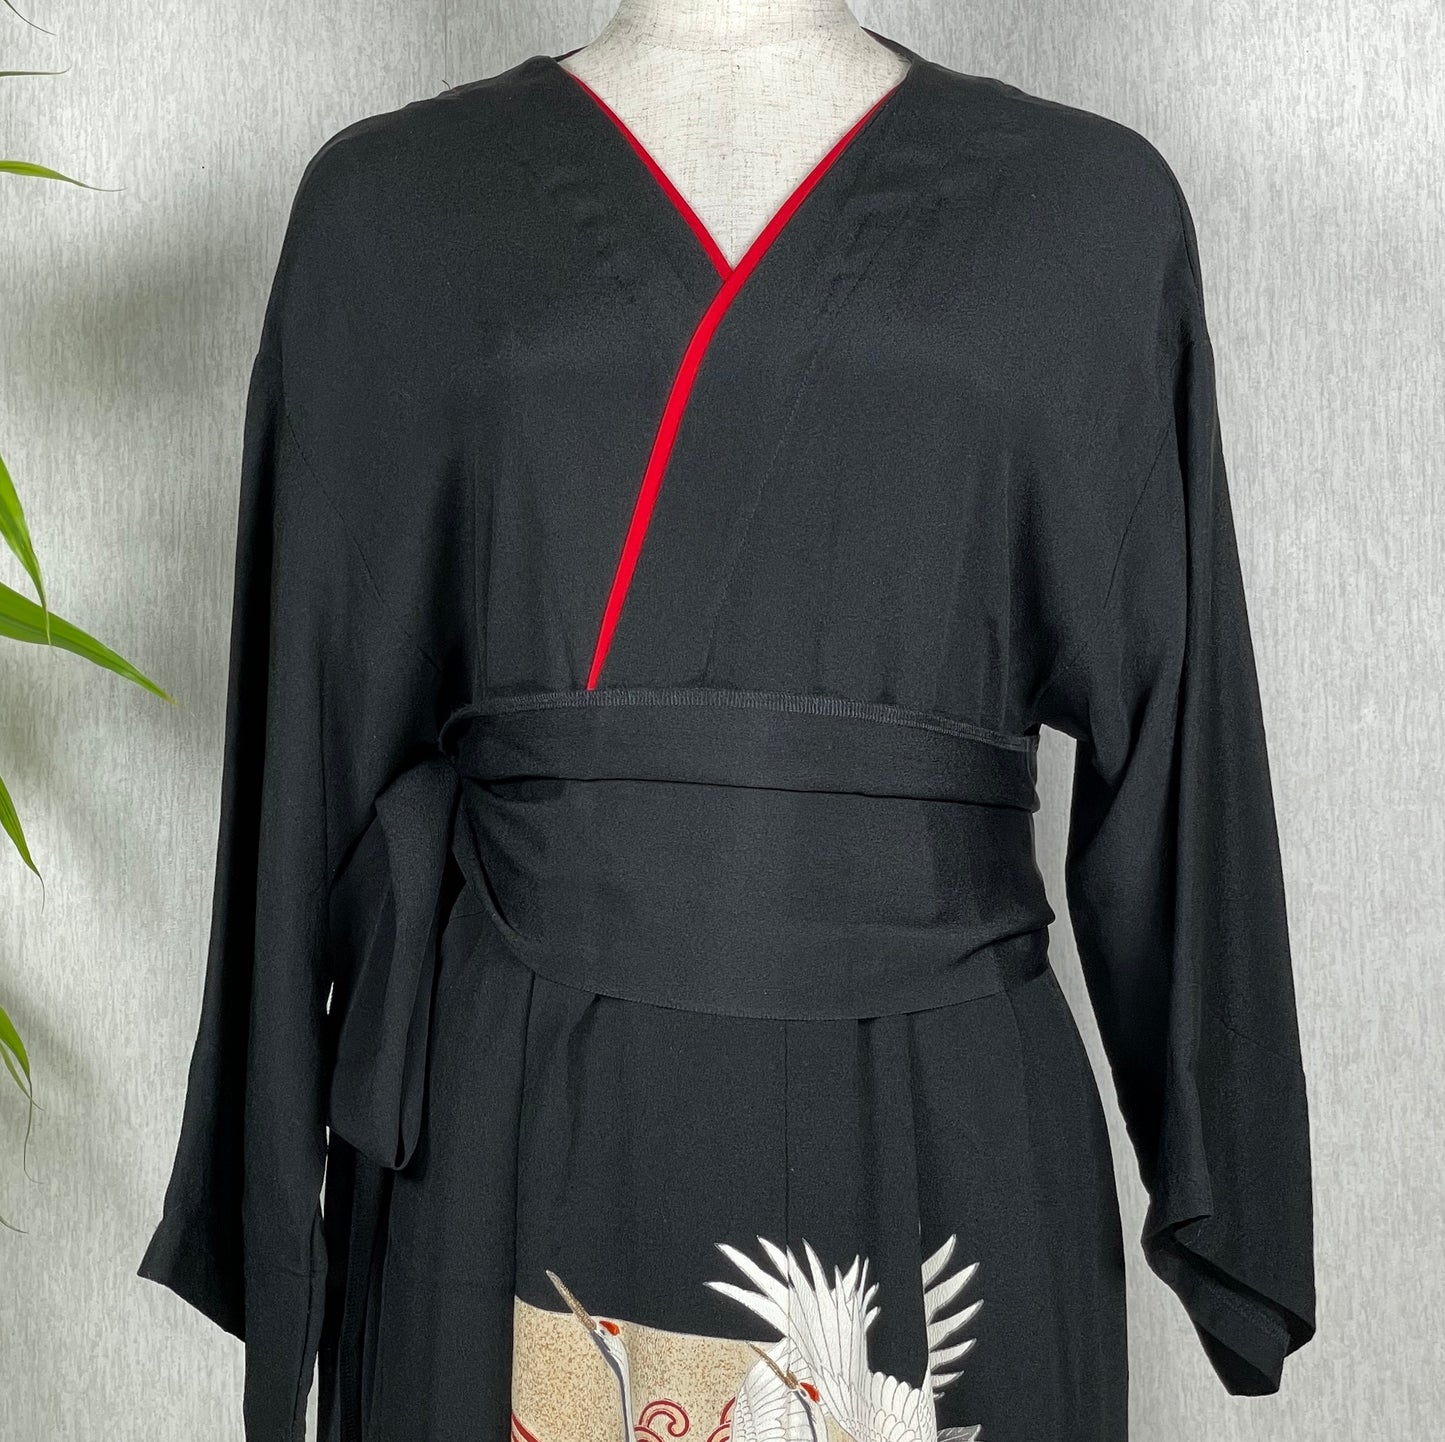 Black Kimono dress, Black kimono wrap dress, Black wrap dress, Kimono style wrap dress, Japanese kimono dresses, Kimono sleeve wrap dress, Free shipping